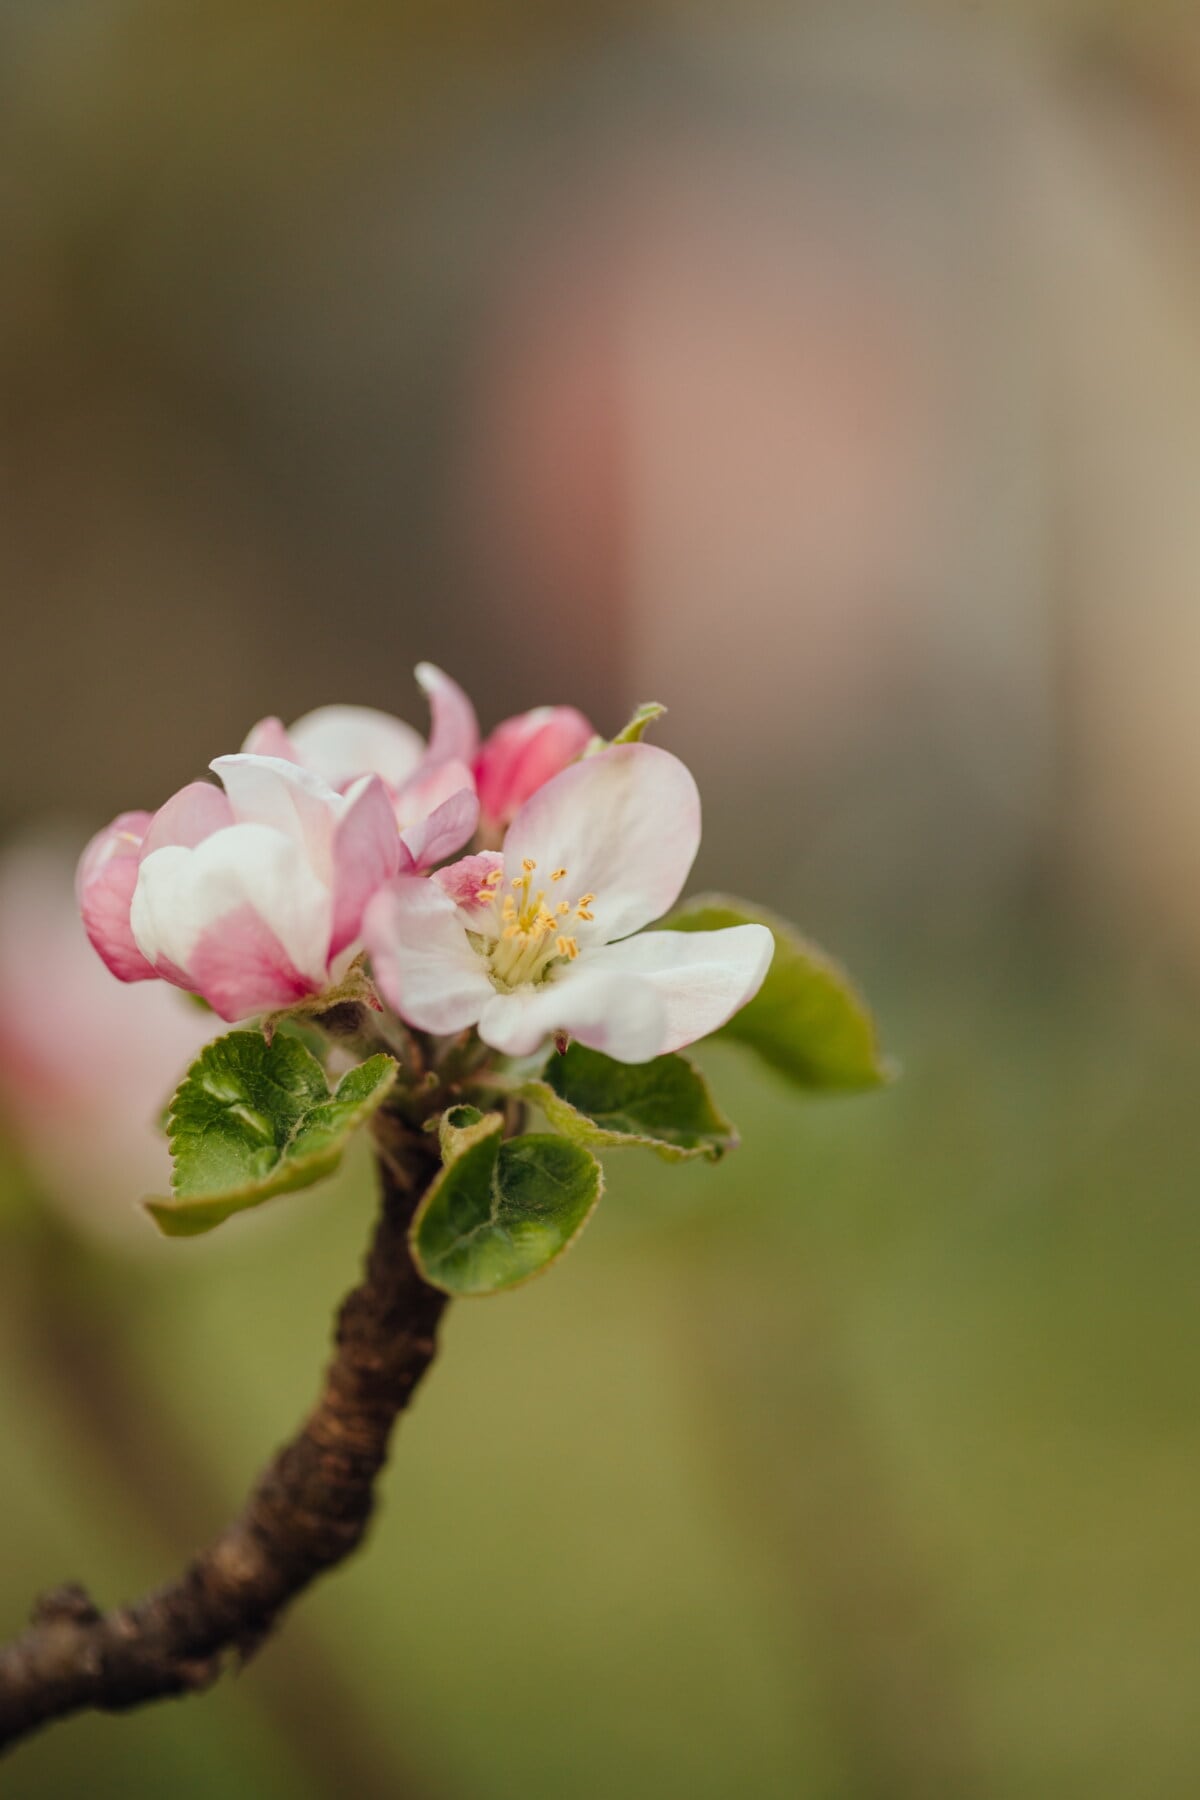 Яблоня, пыльца, Белый цветок, время весны, крупным планом, пестик, лепесток, размытие, яблоко, цветок